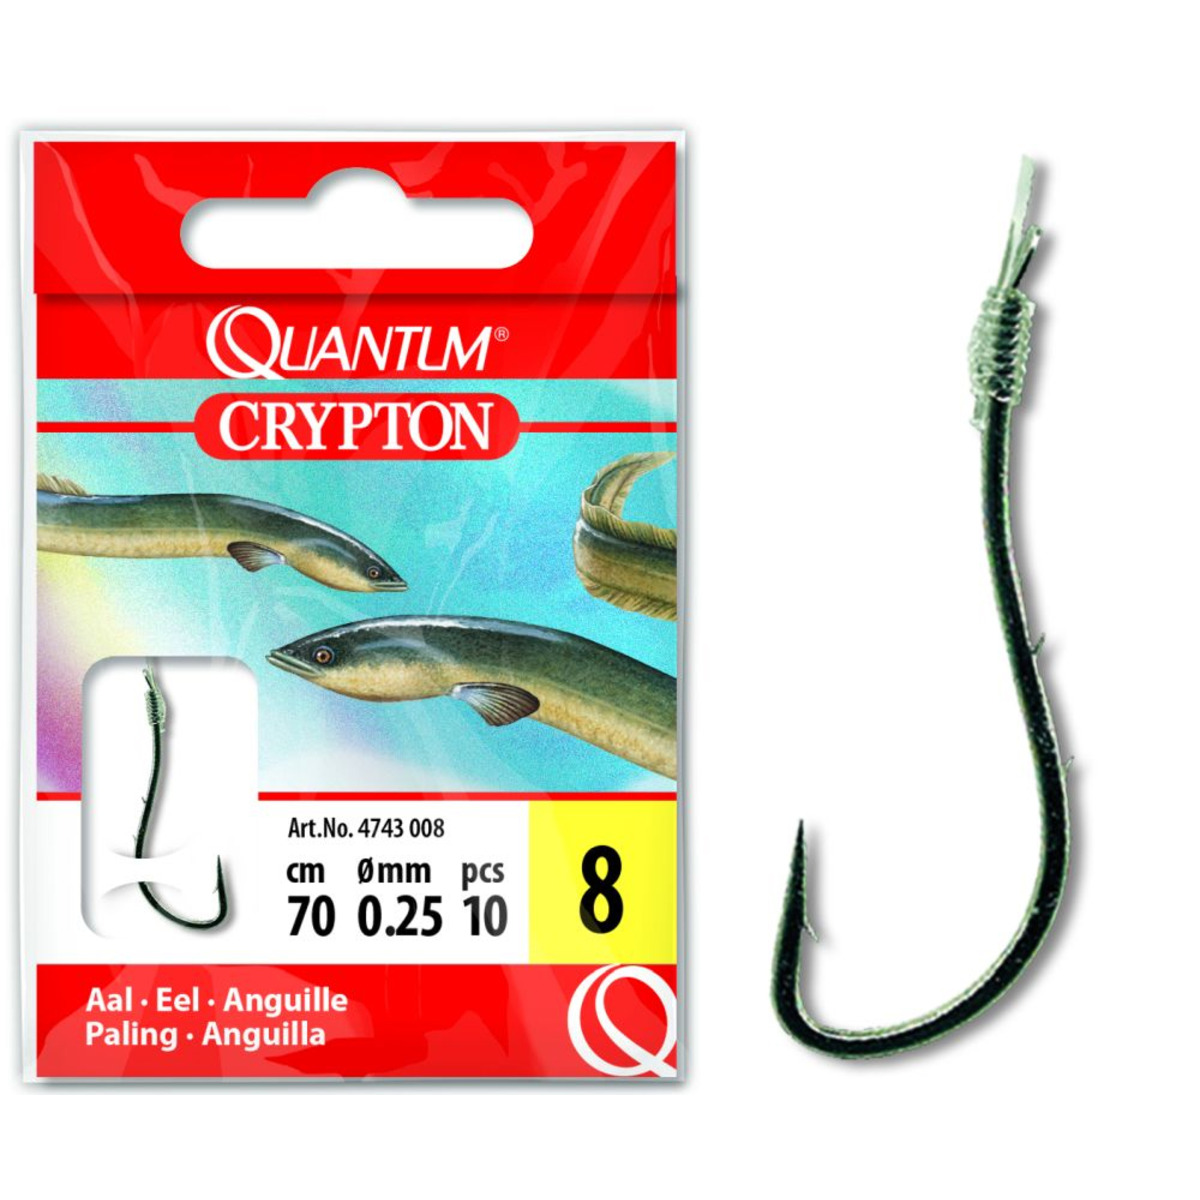 Quantum Crypton Eel Hook-to-nylon - 2